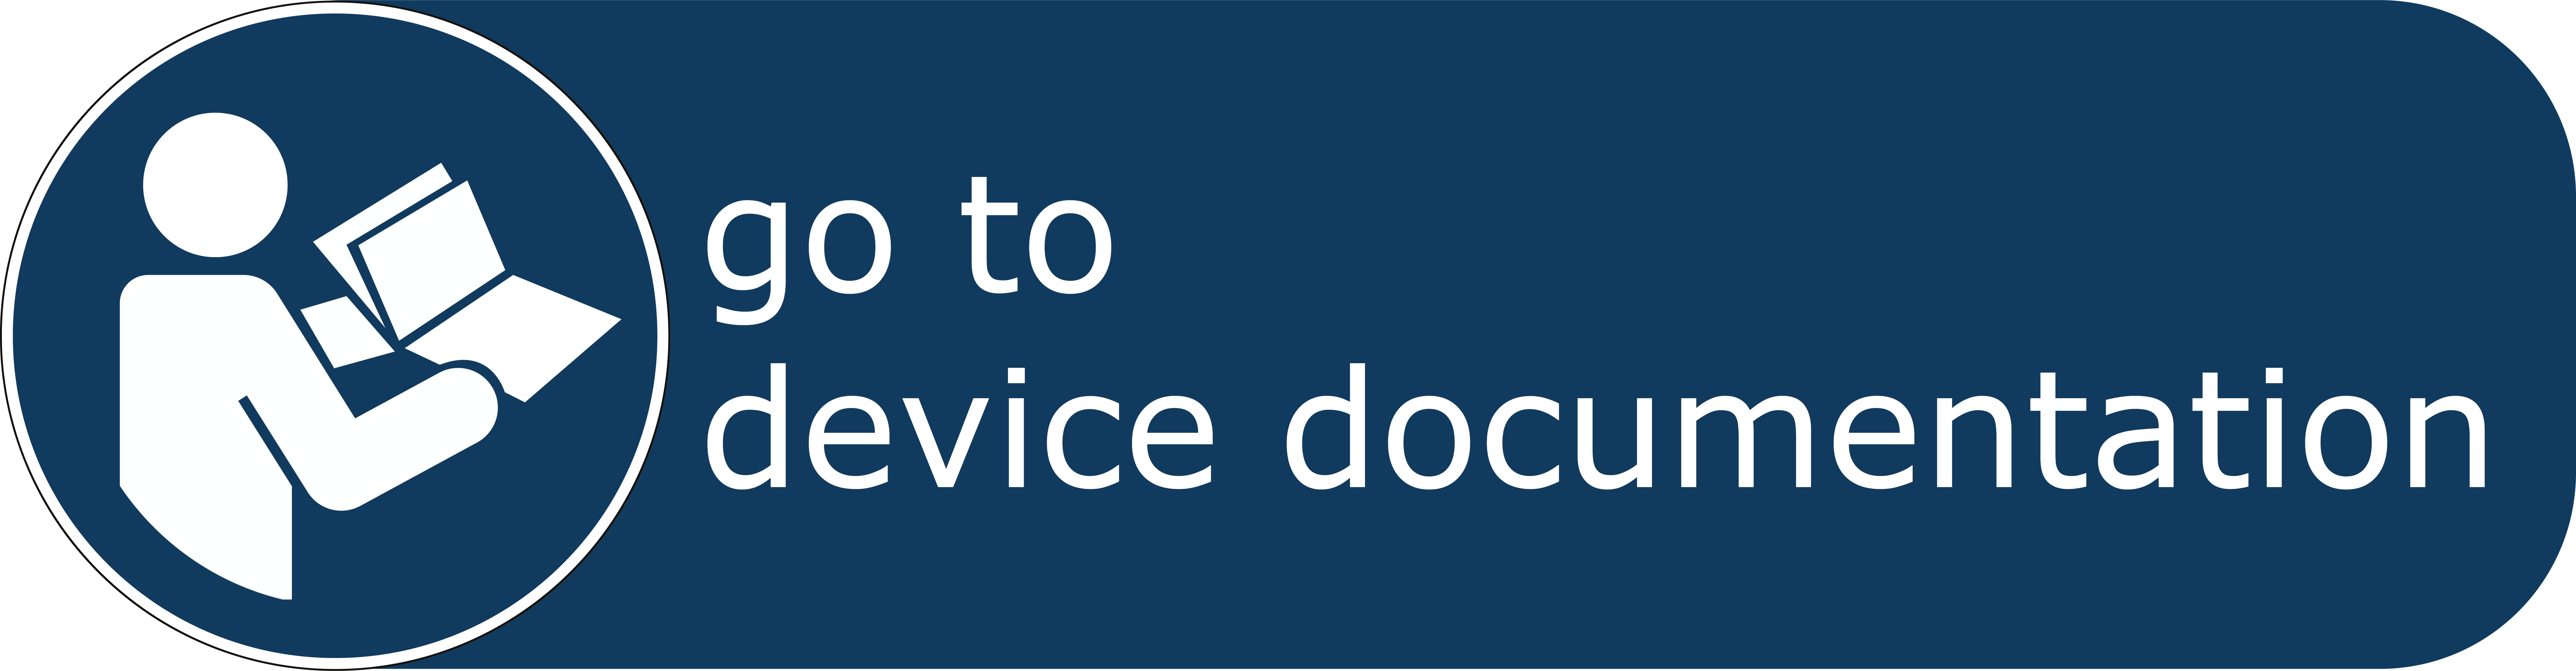 Go to device documentation